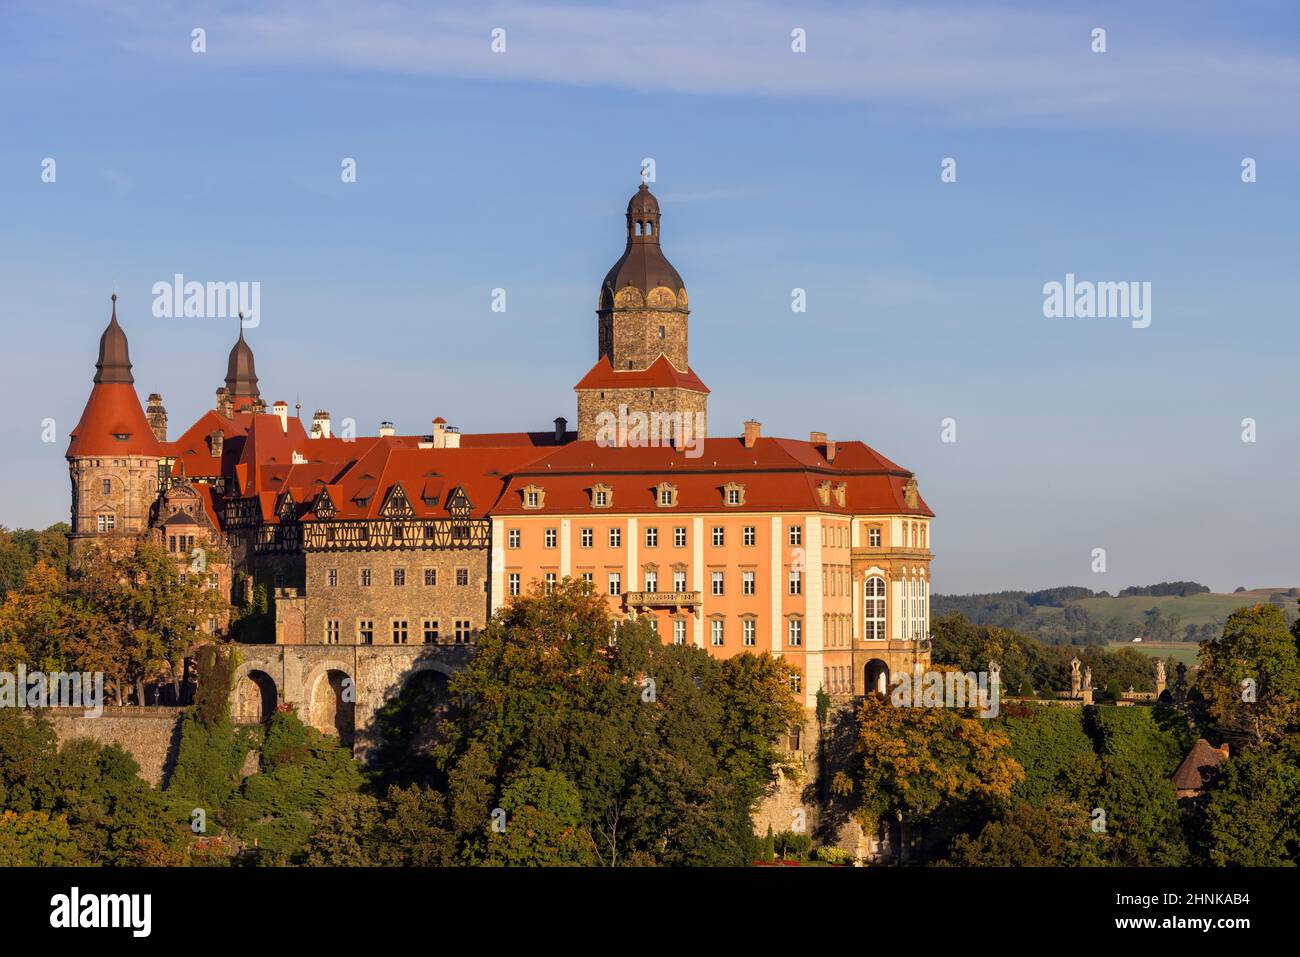 Burg Ksiaz, mittelalterliche geheimnisvolle Festung aus dem 13th. Jahrhundert, Walbrzych, Polen Stockfoto